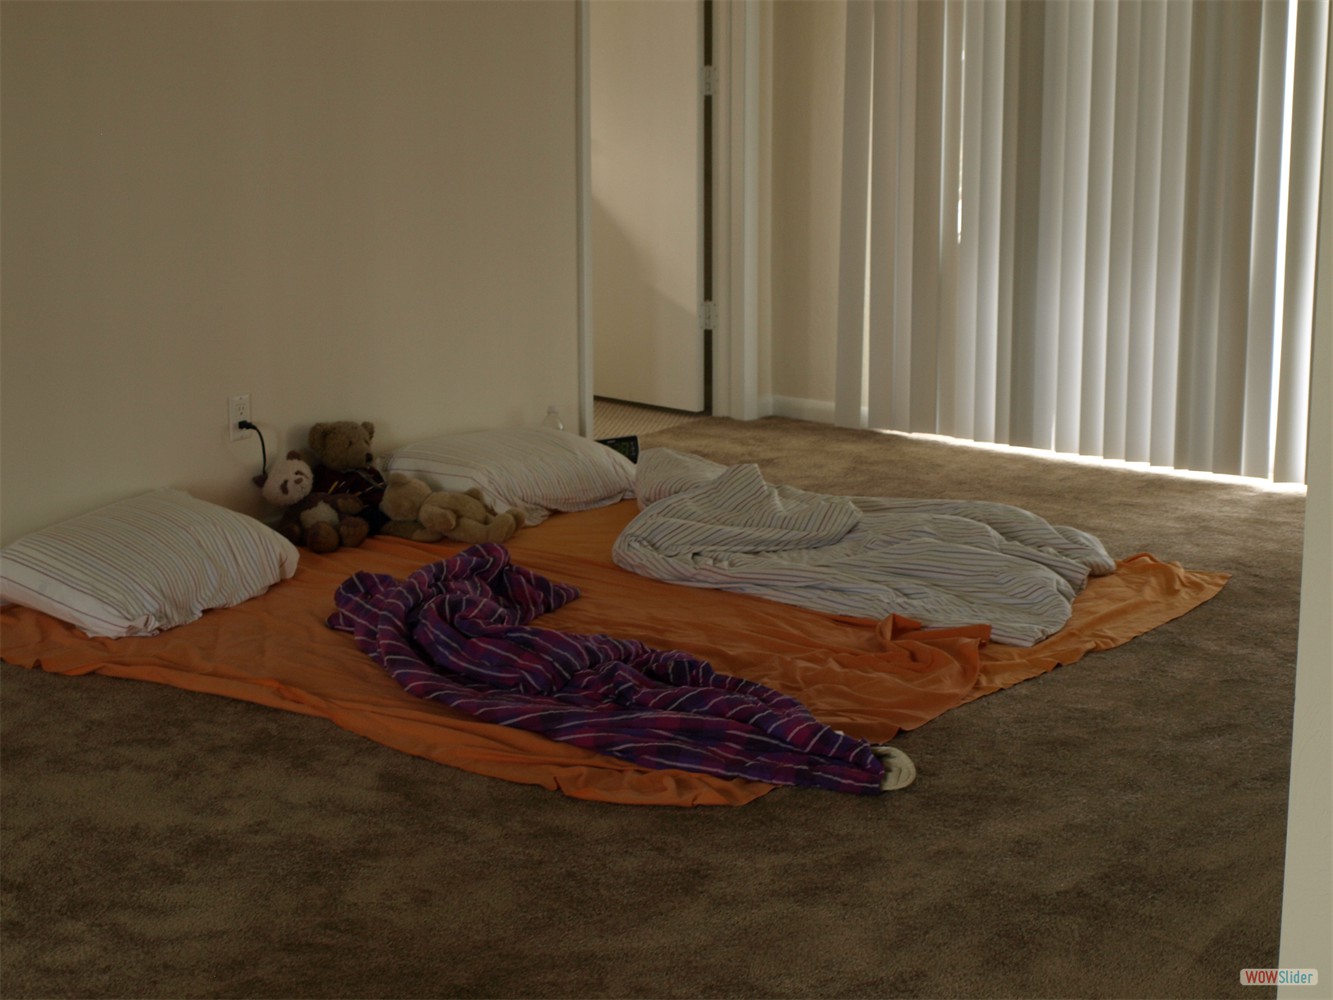 ... war unsere erste Schlafgelegenheit im Wohnzimmer auf dem Teppich, ...